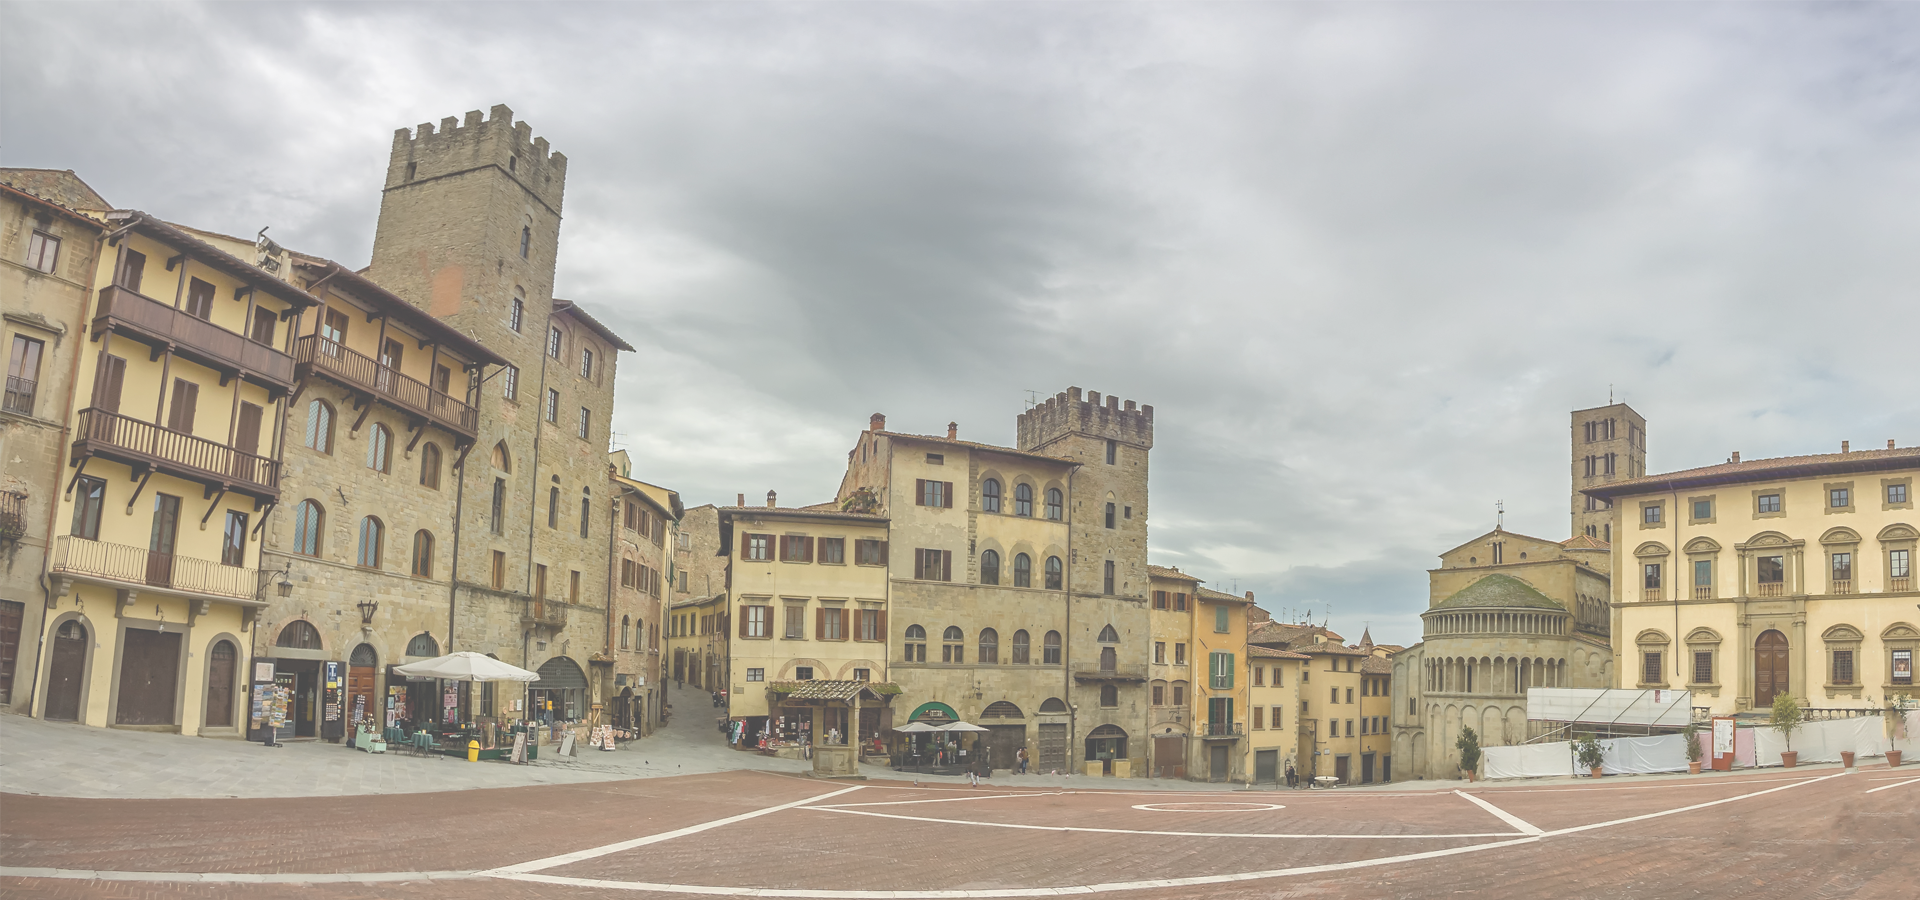 <b>Arezzo, Tuscany Region, Italy</b>